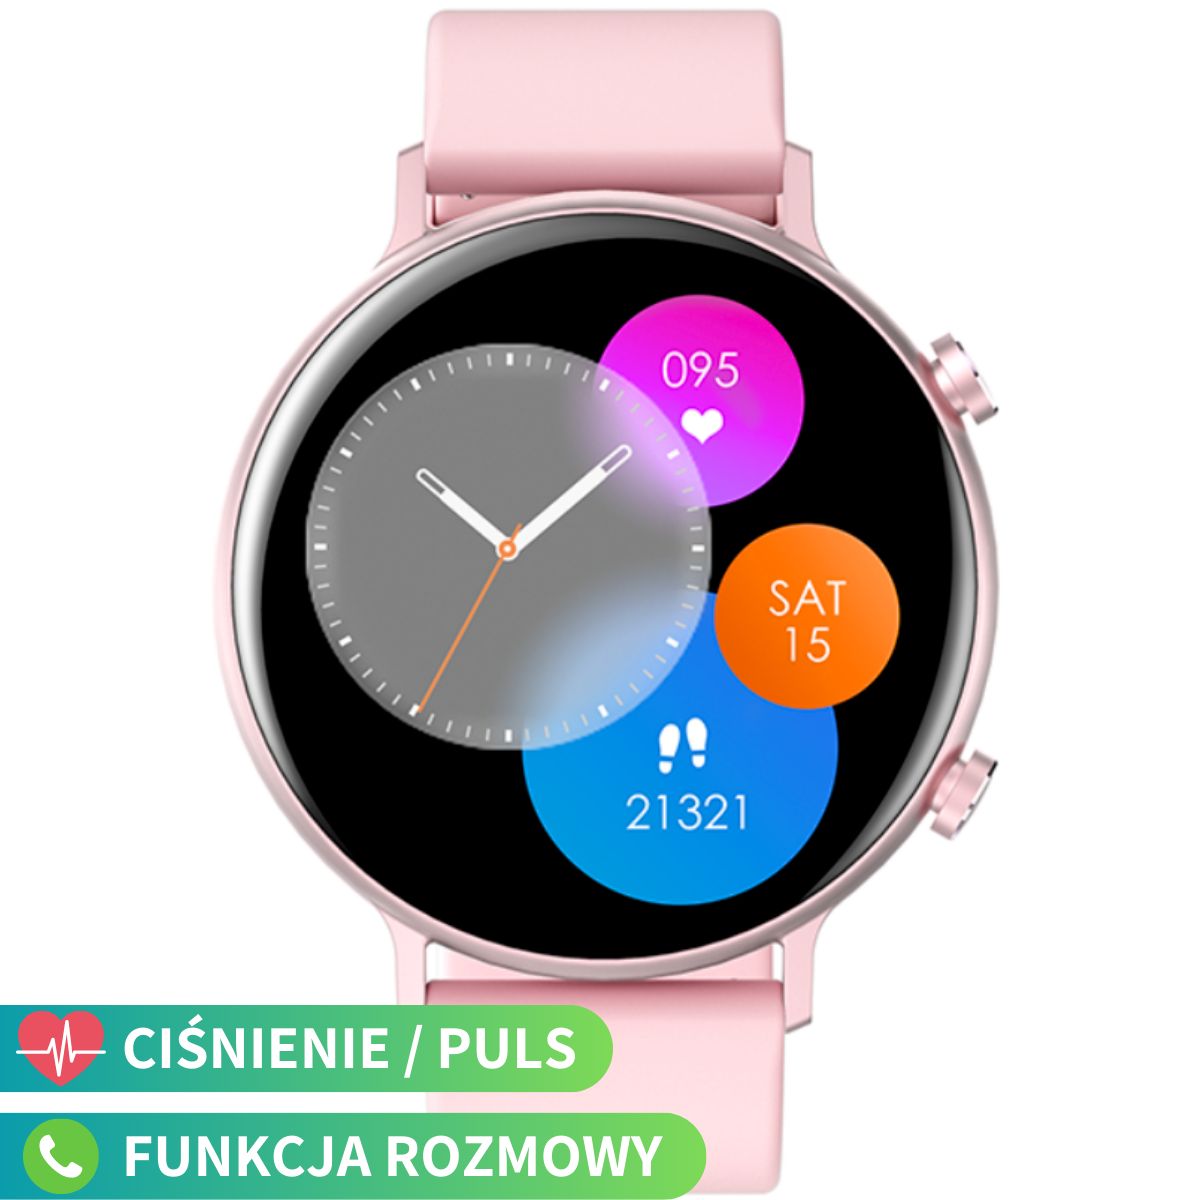 Różowy smartwatch z funkcją rozmowy Rubicon RNCE98 SMARUB192 - 179,00 zł -  Otozegarki.pl